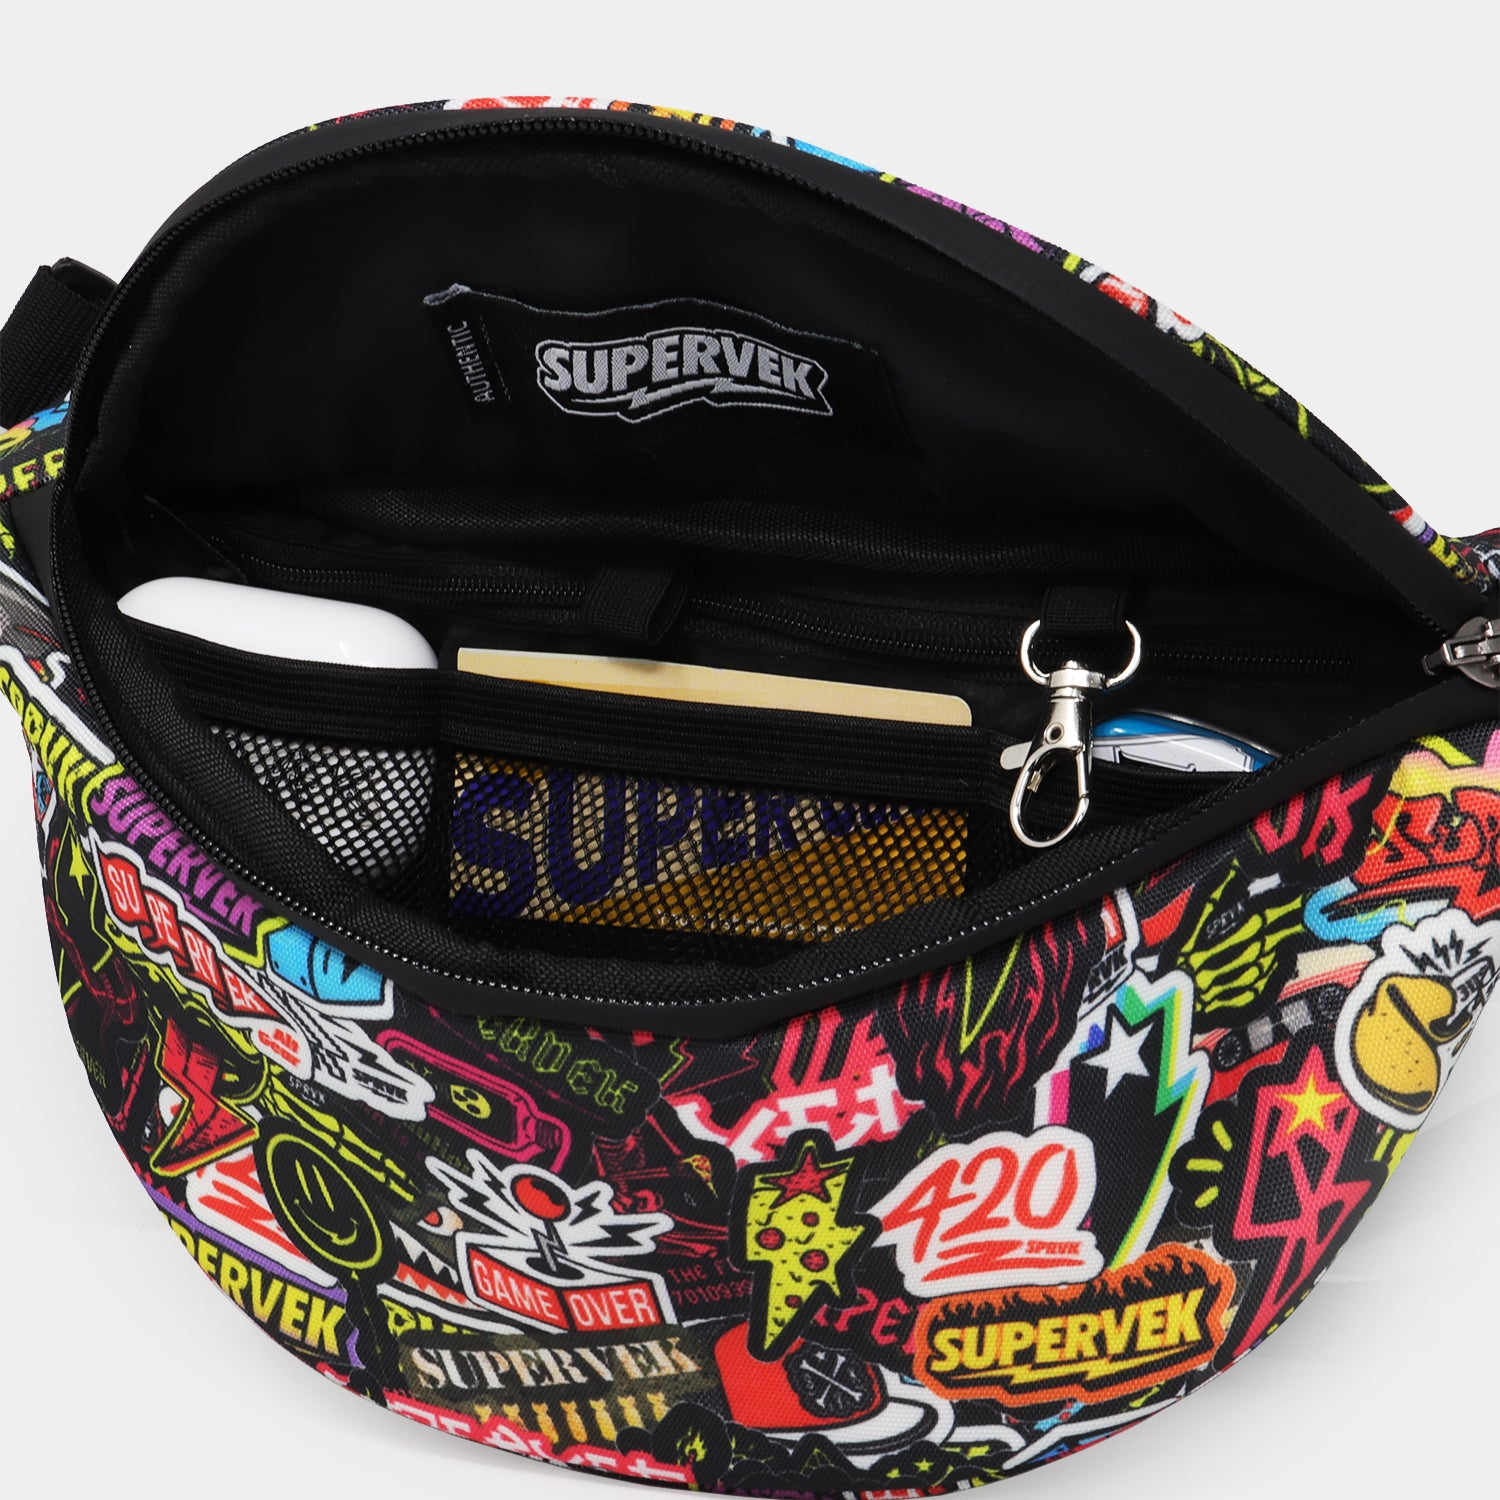 Supervek Crossbody Slinger - Stickulture - Urban Functional Fanny Hip Bag for Everyday Essentials - Inside